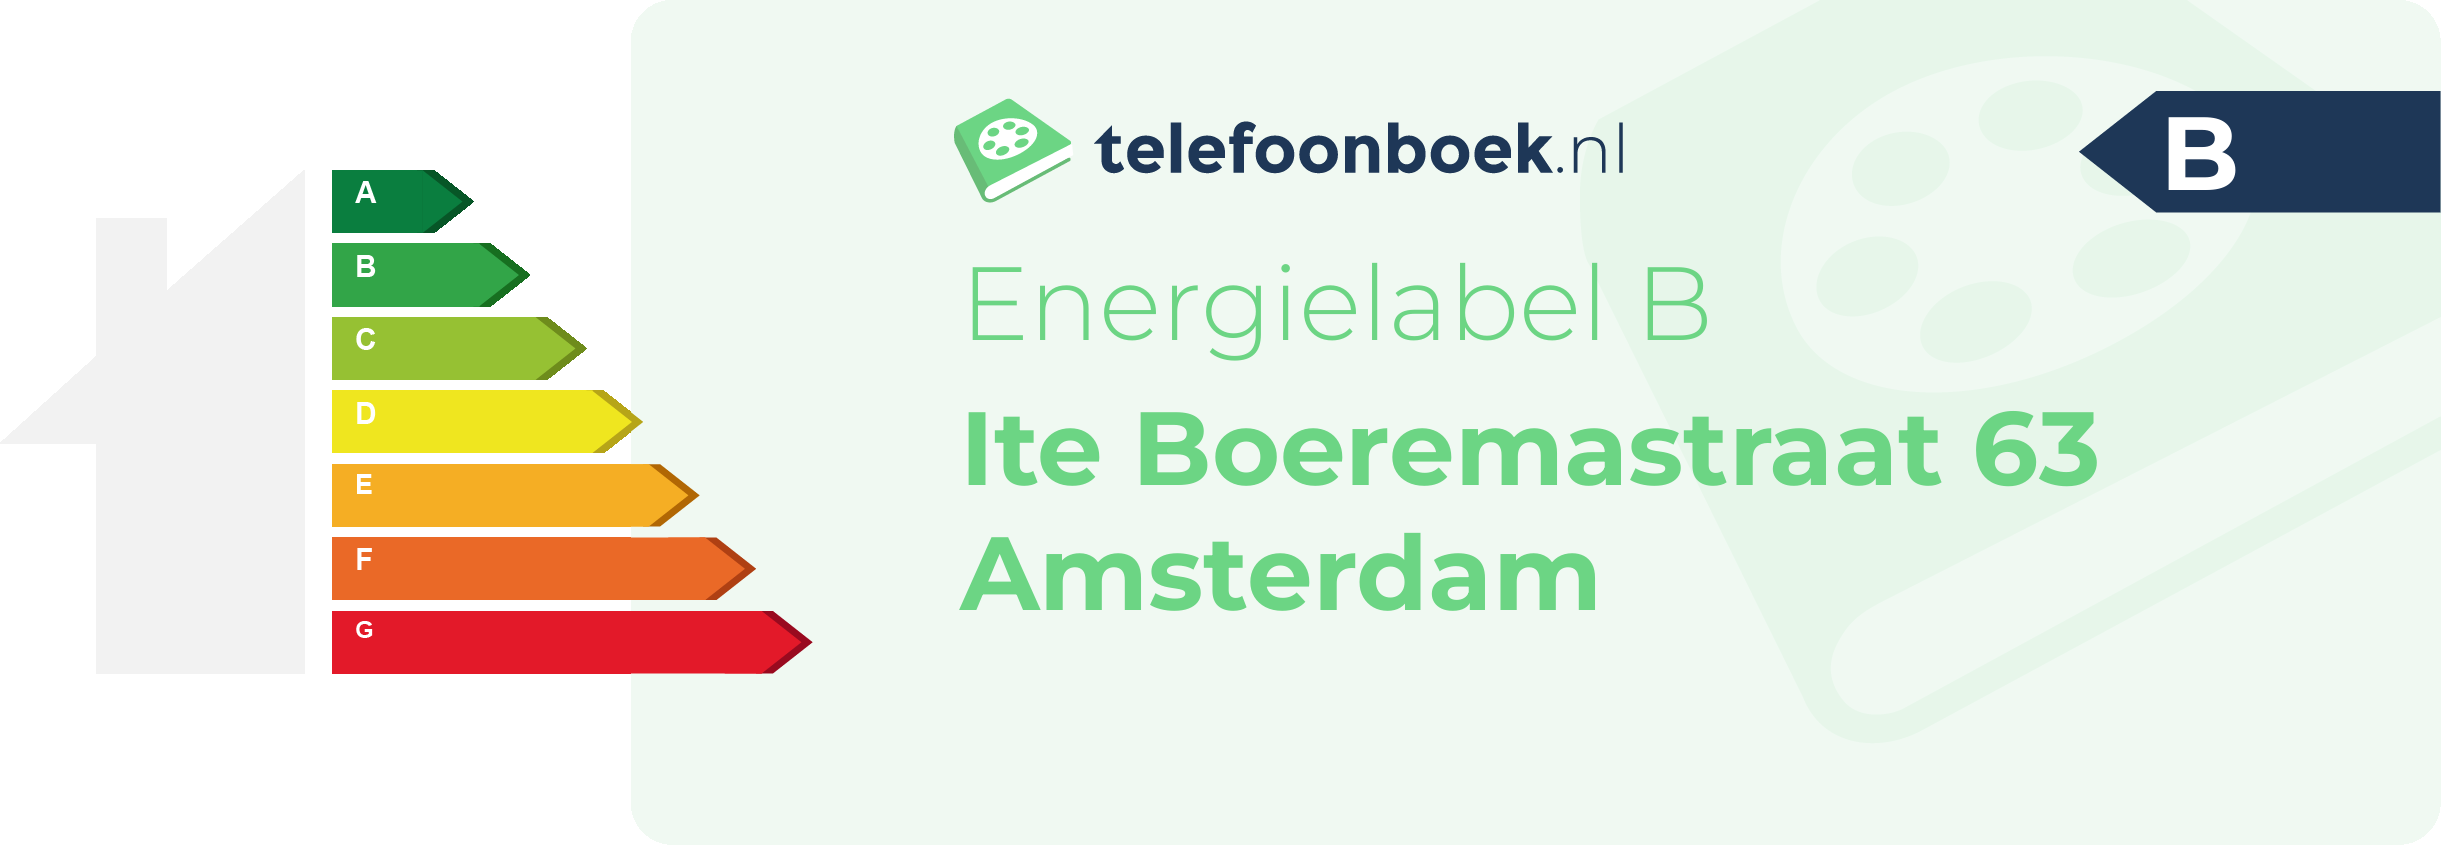 Energielabel Ite Boeremastraat 63 Amsterdam